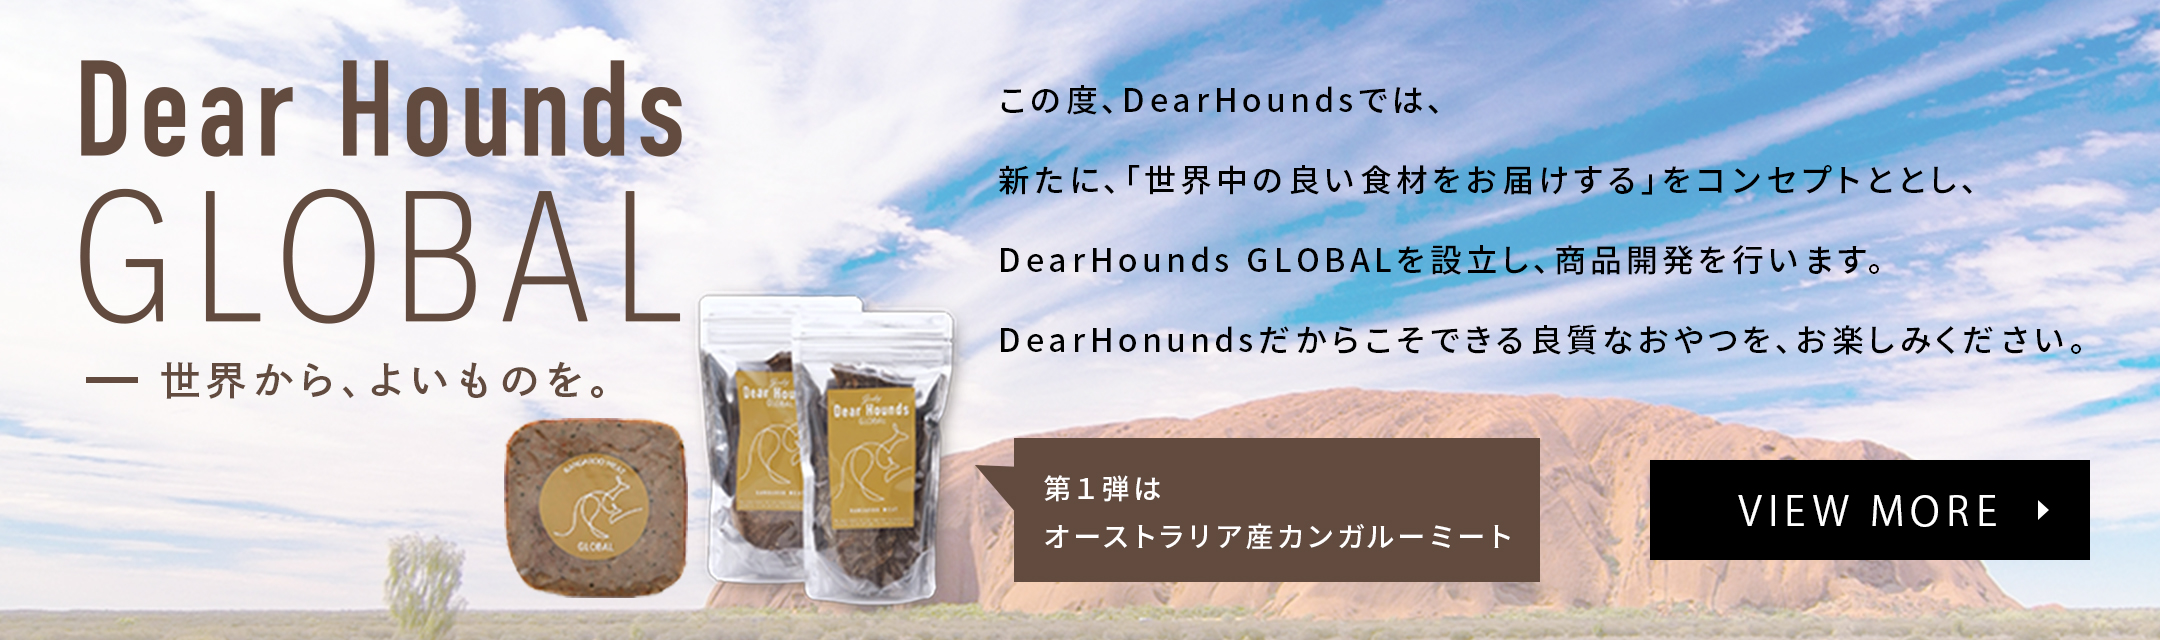 DearHounds Global -世界からよいものを。